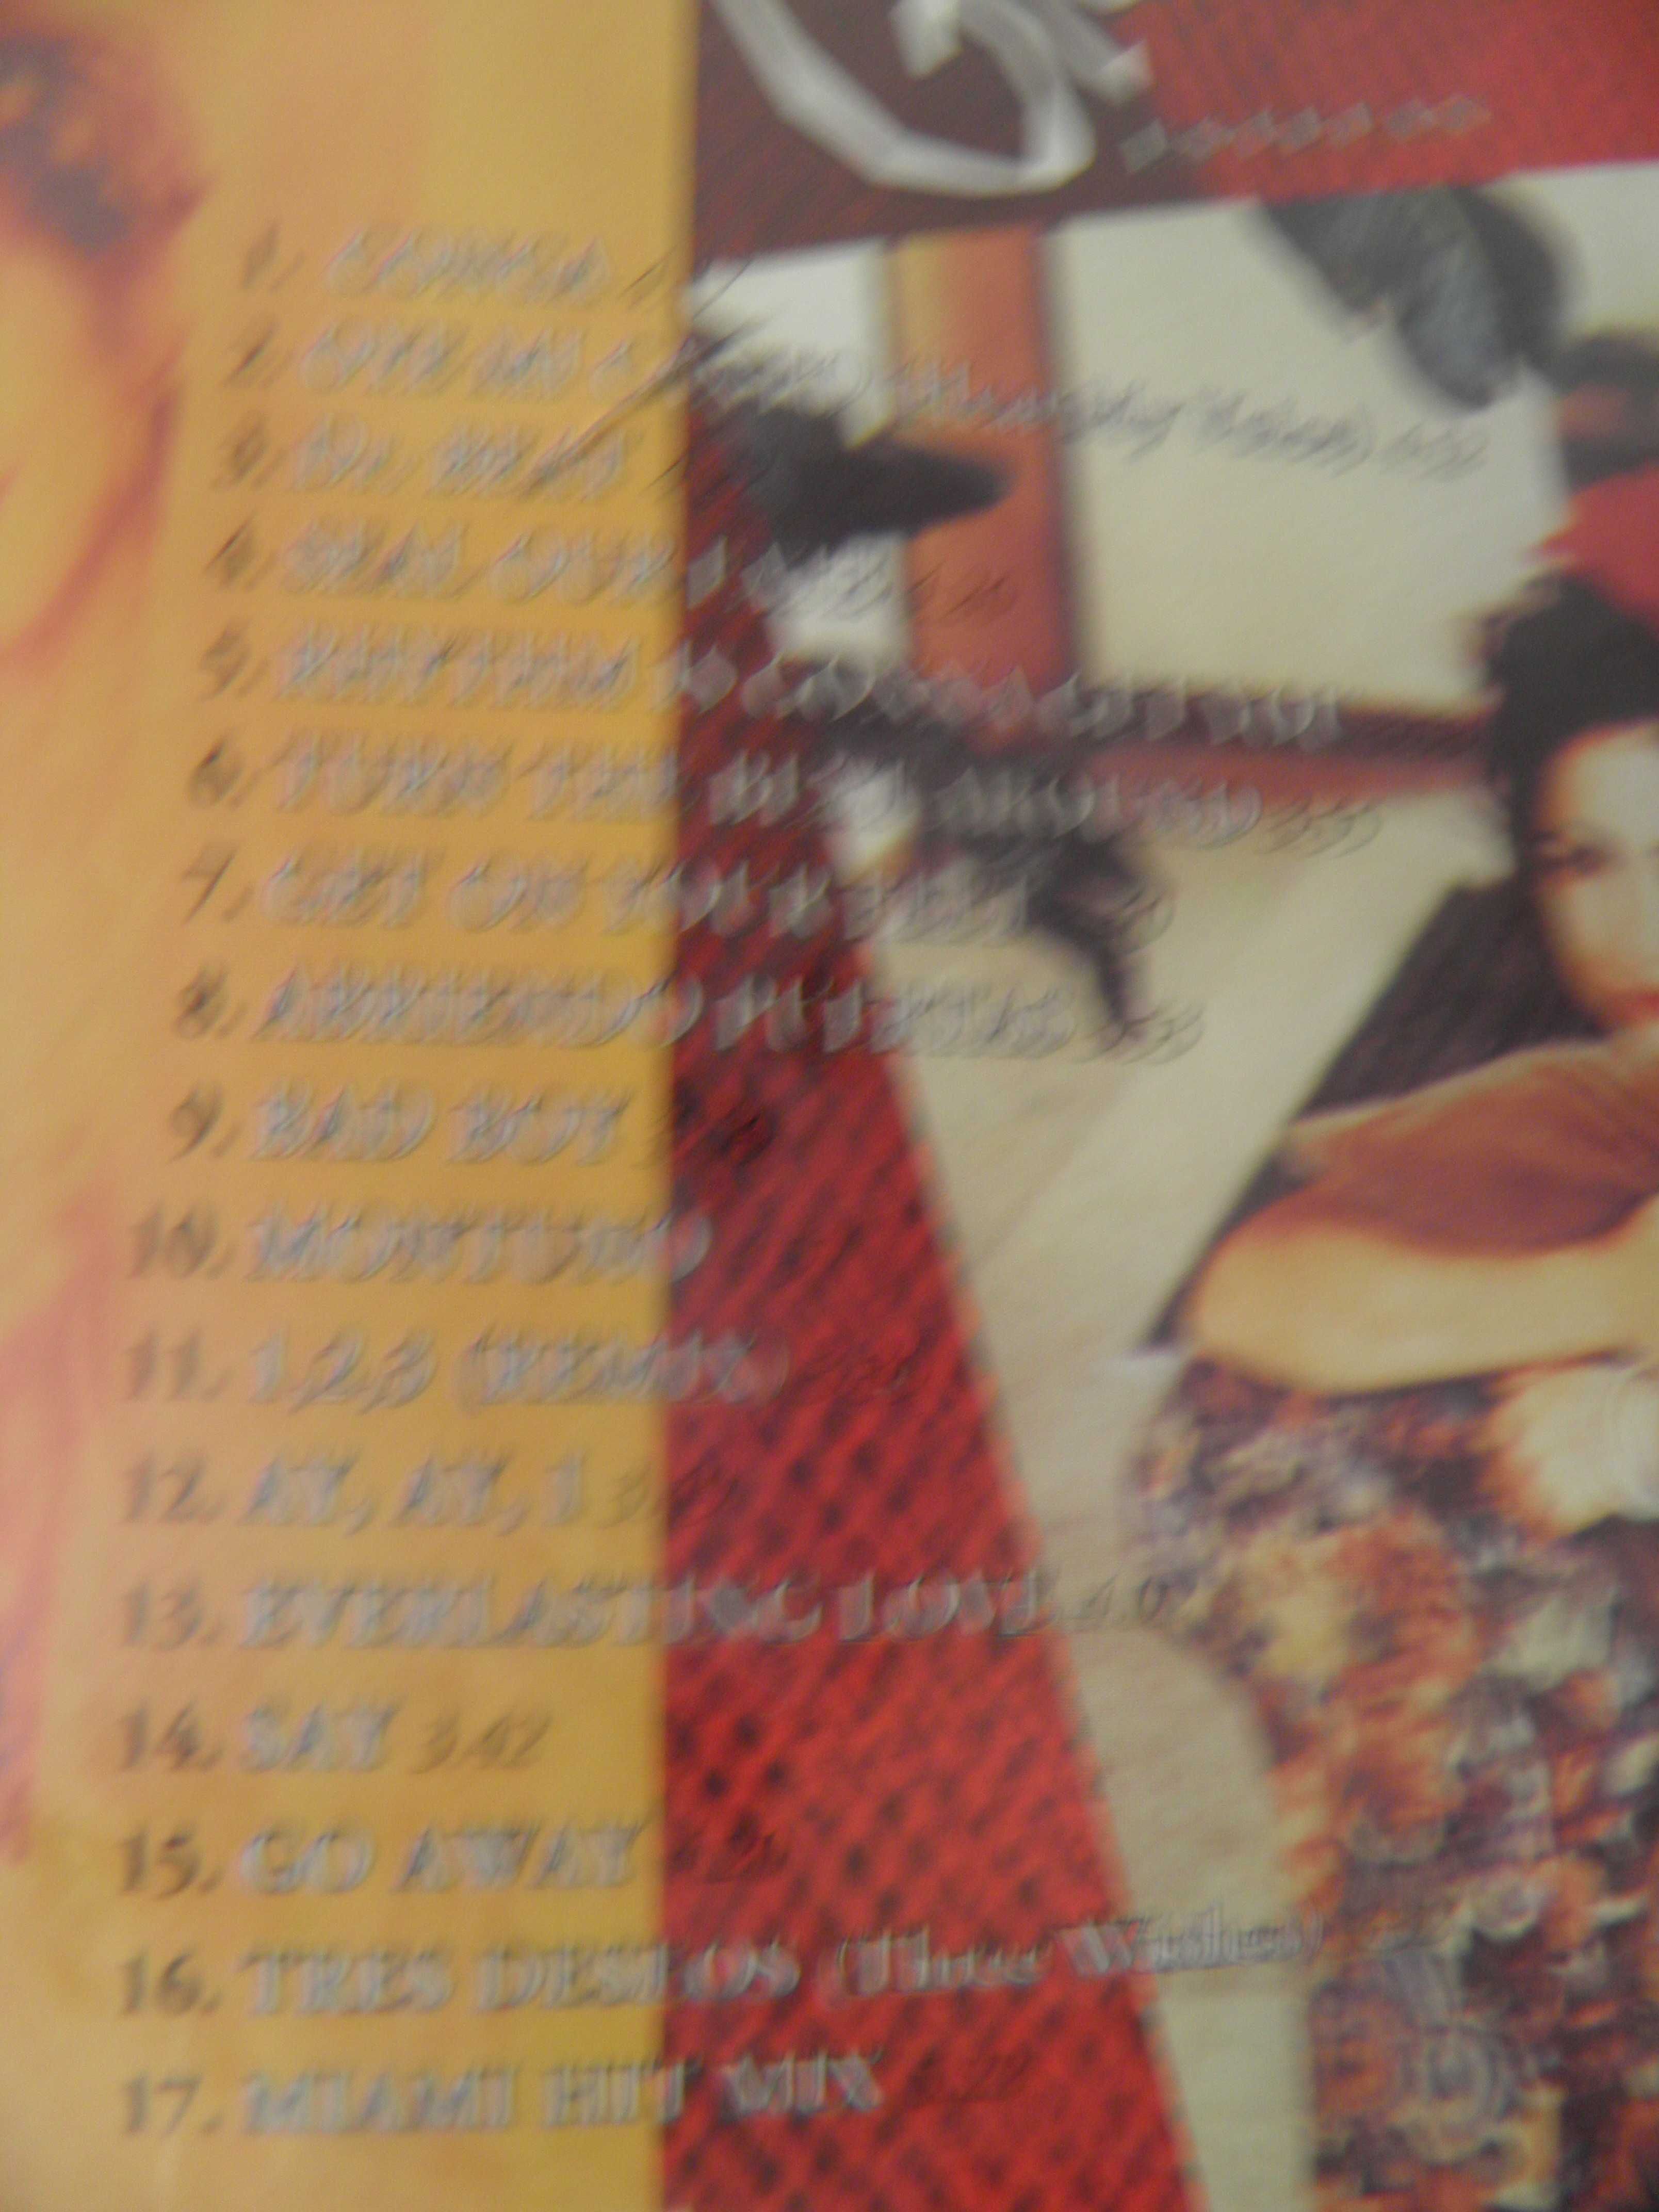 Gloria Estefan Dance Collection cd